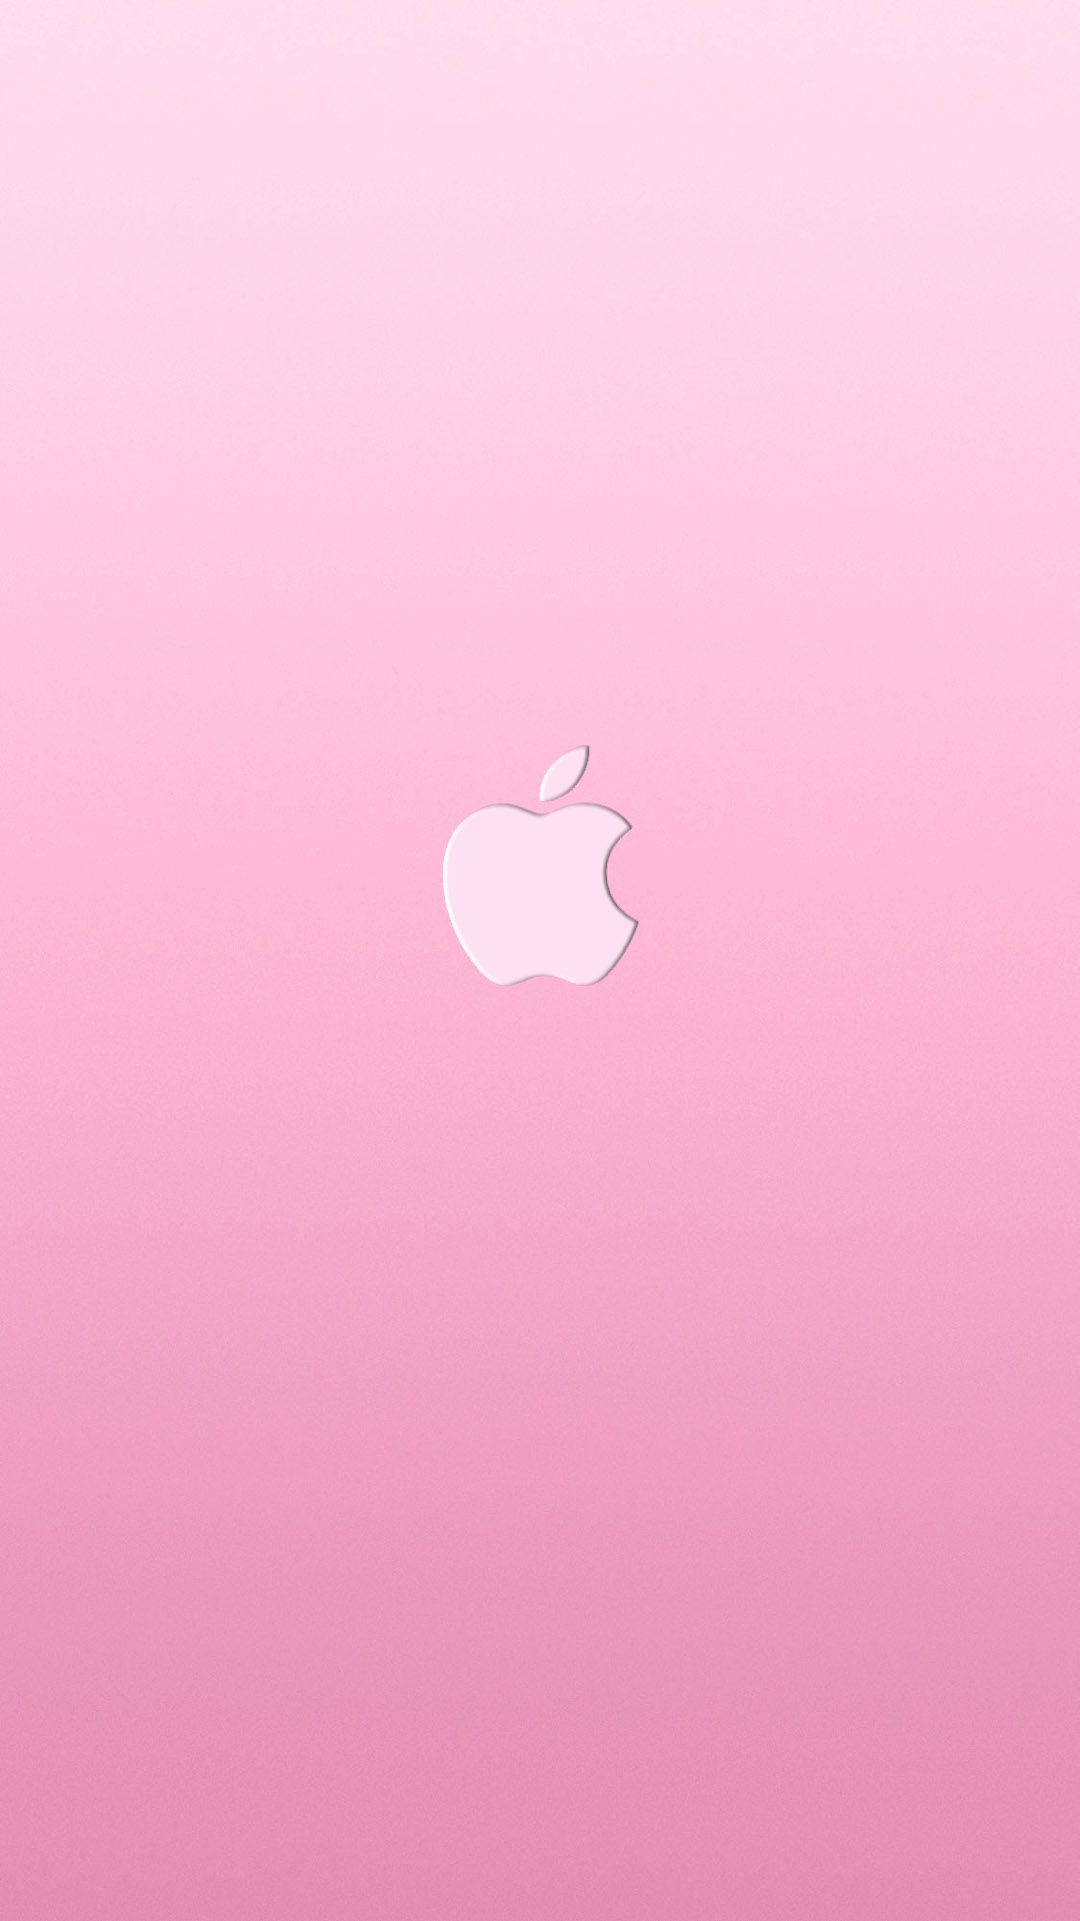 Картинки розового айфона